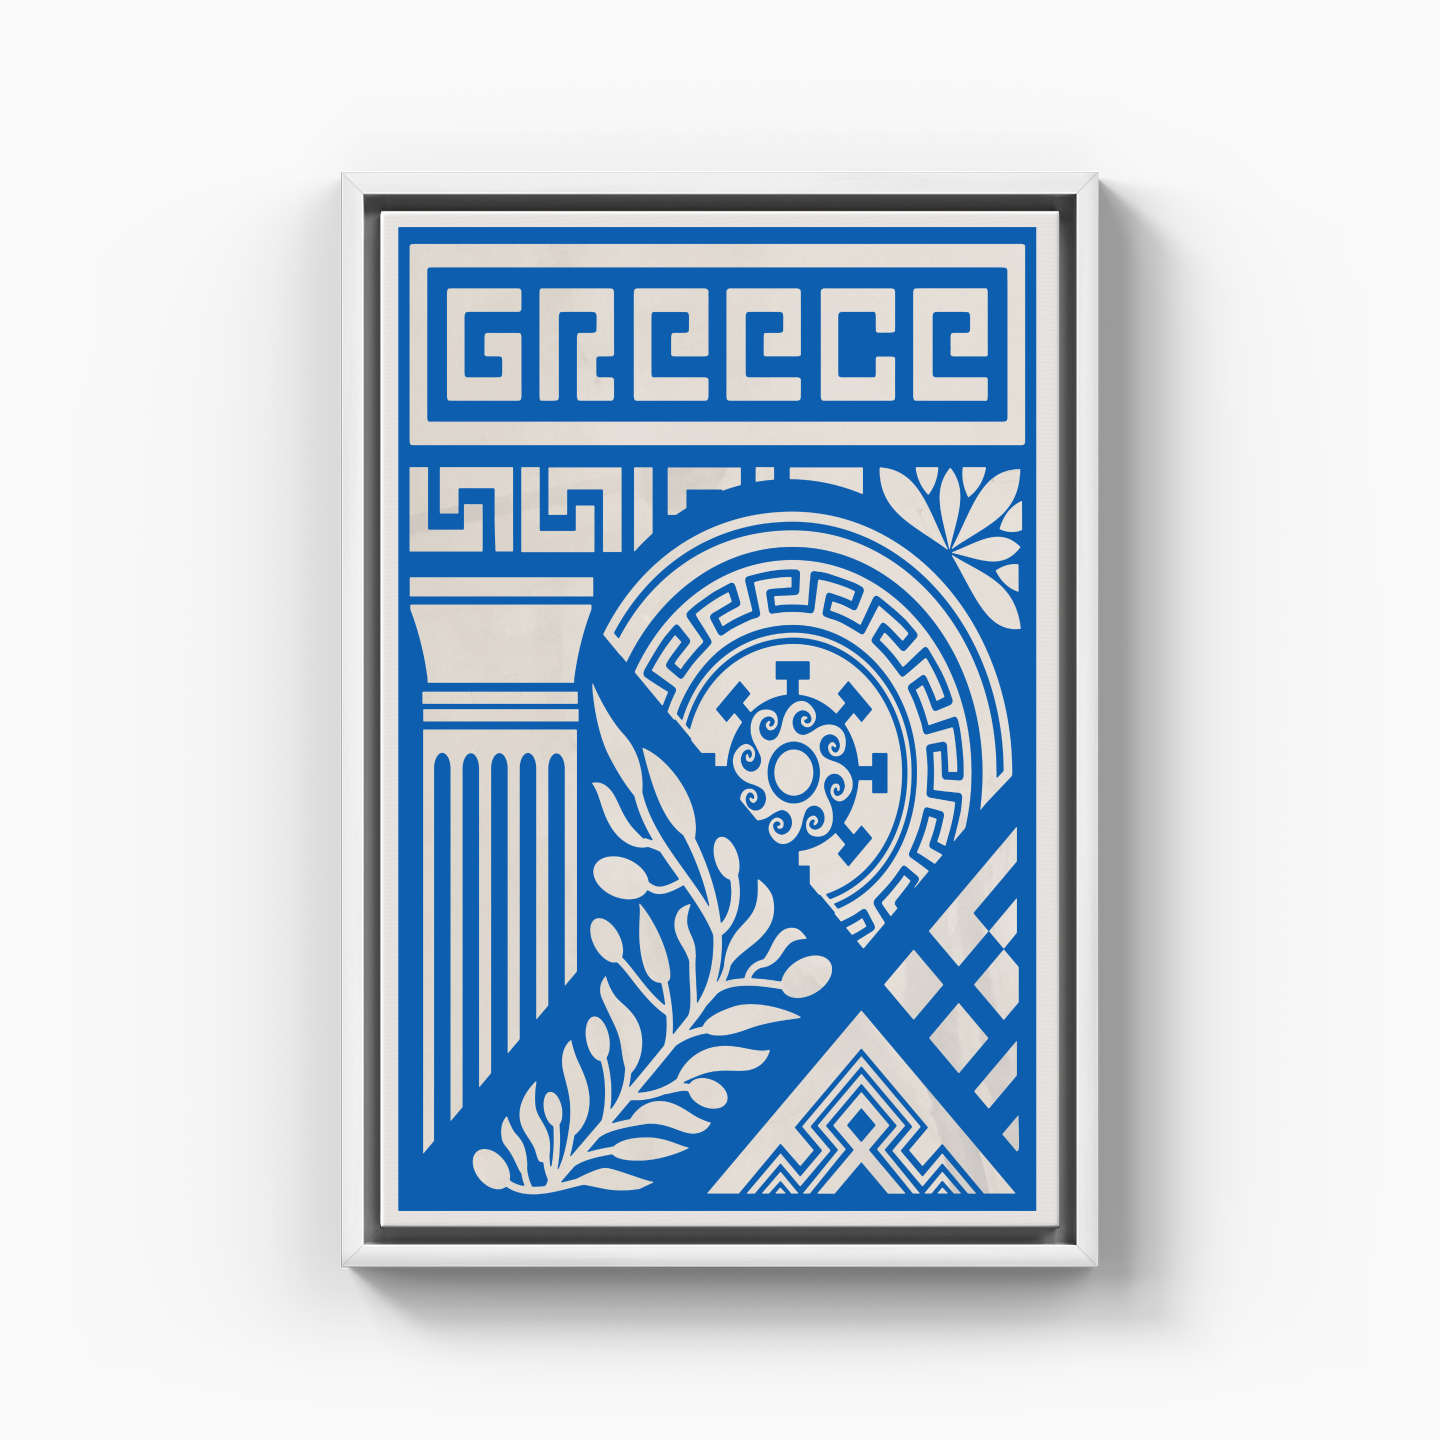 GREECE - Kanvas Tablo